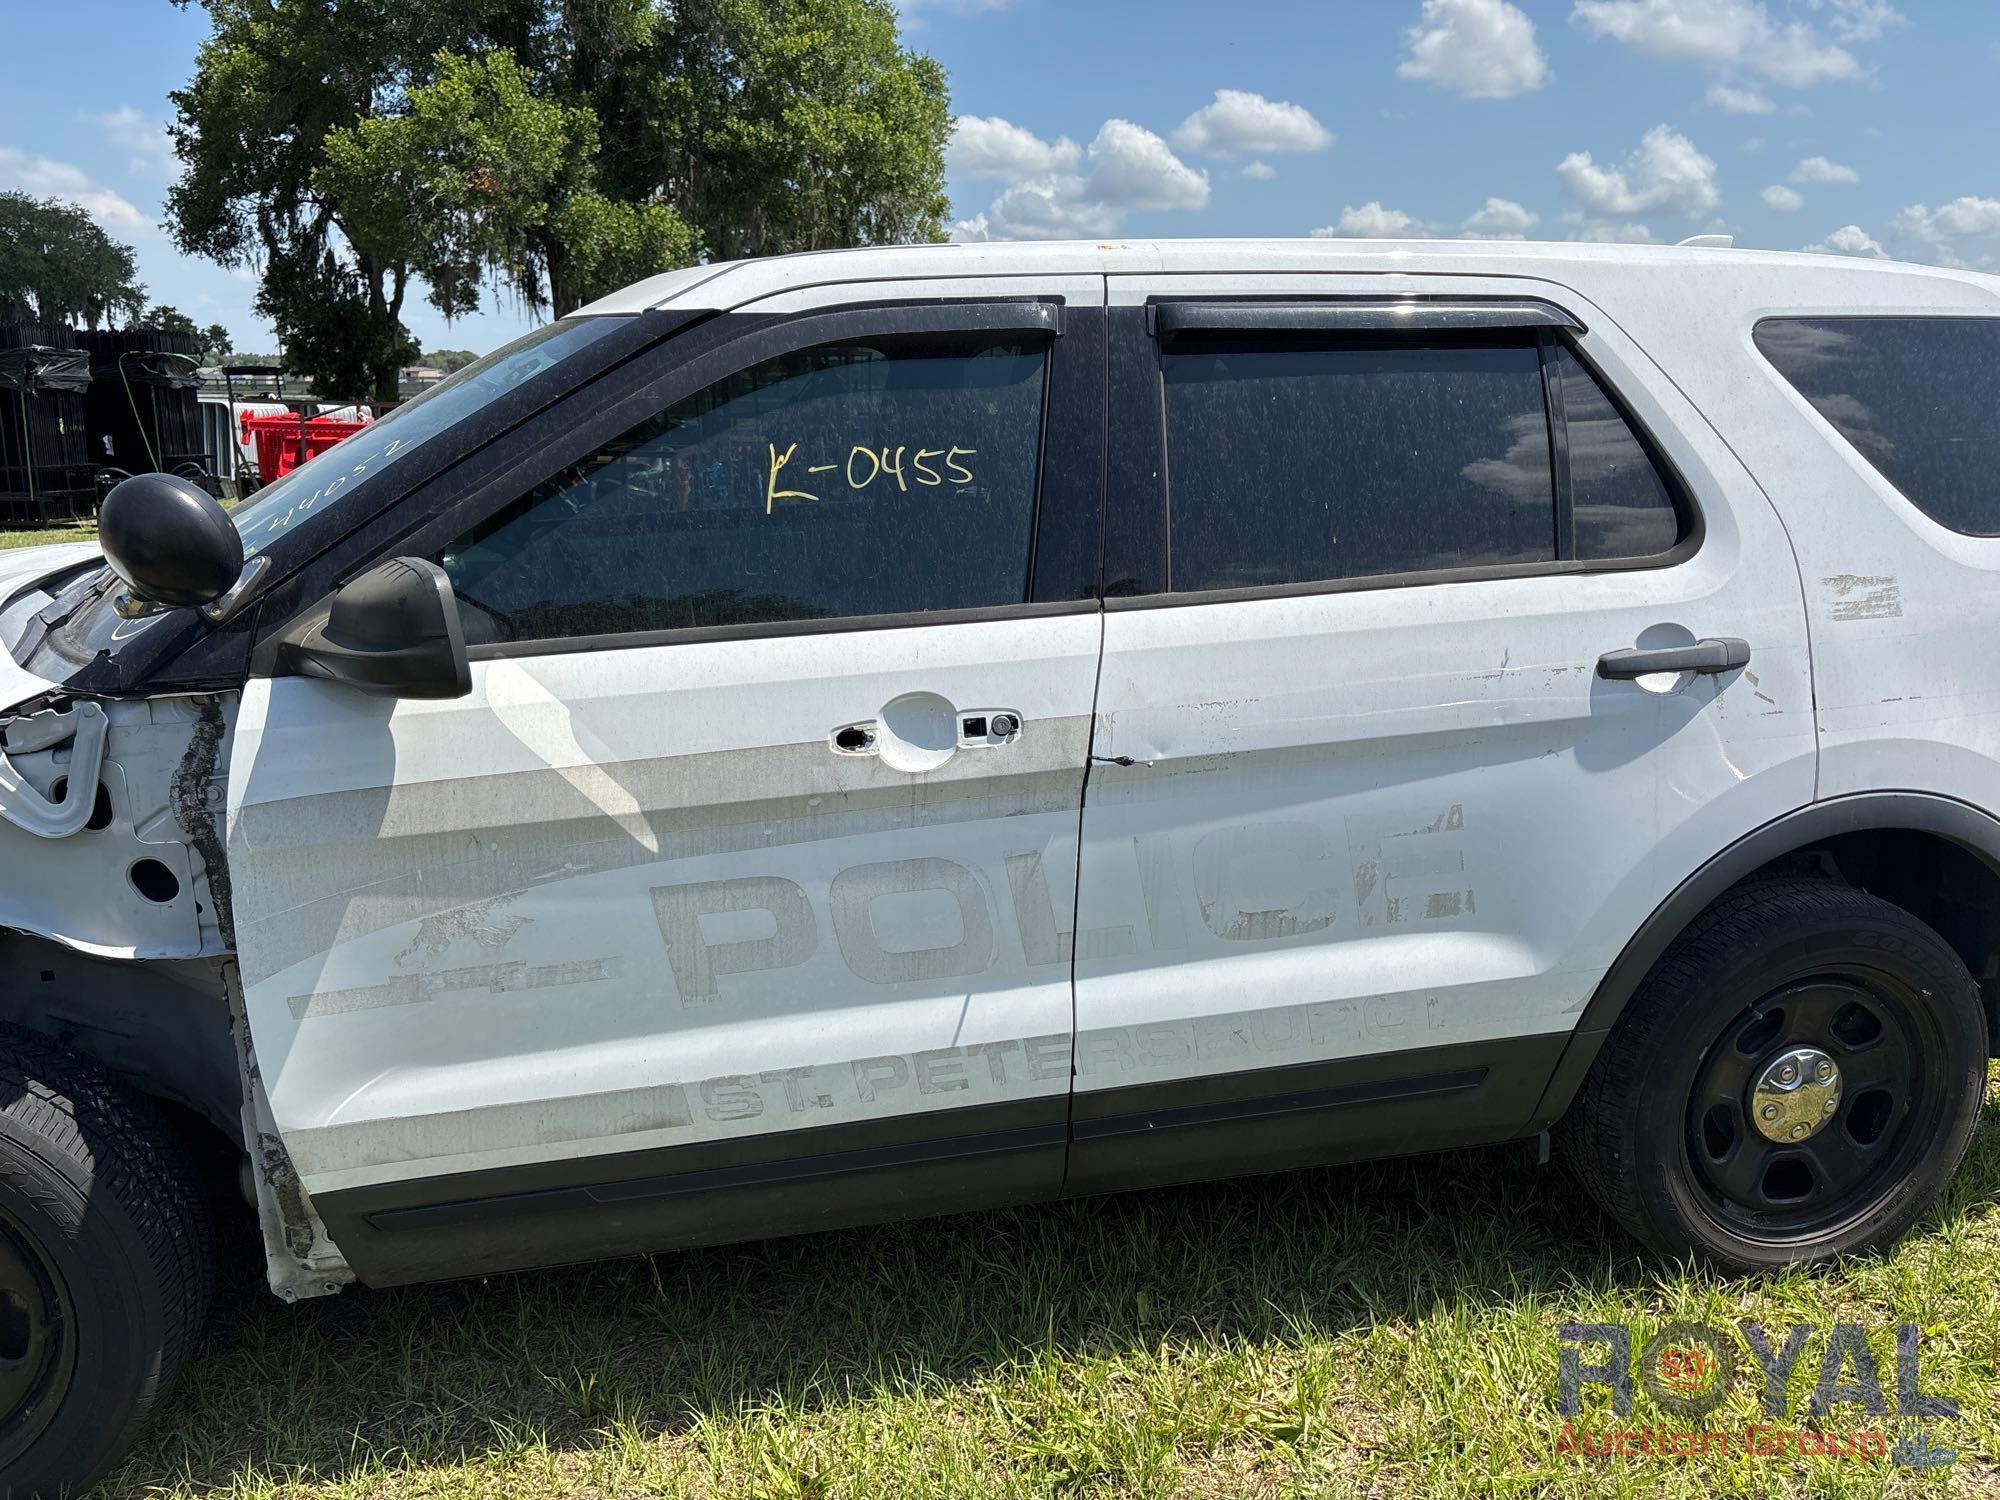 2017 Ford Explorer AWD SUV